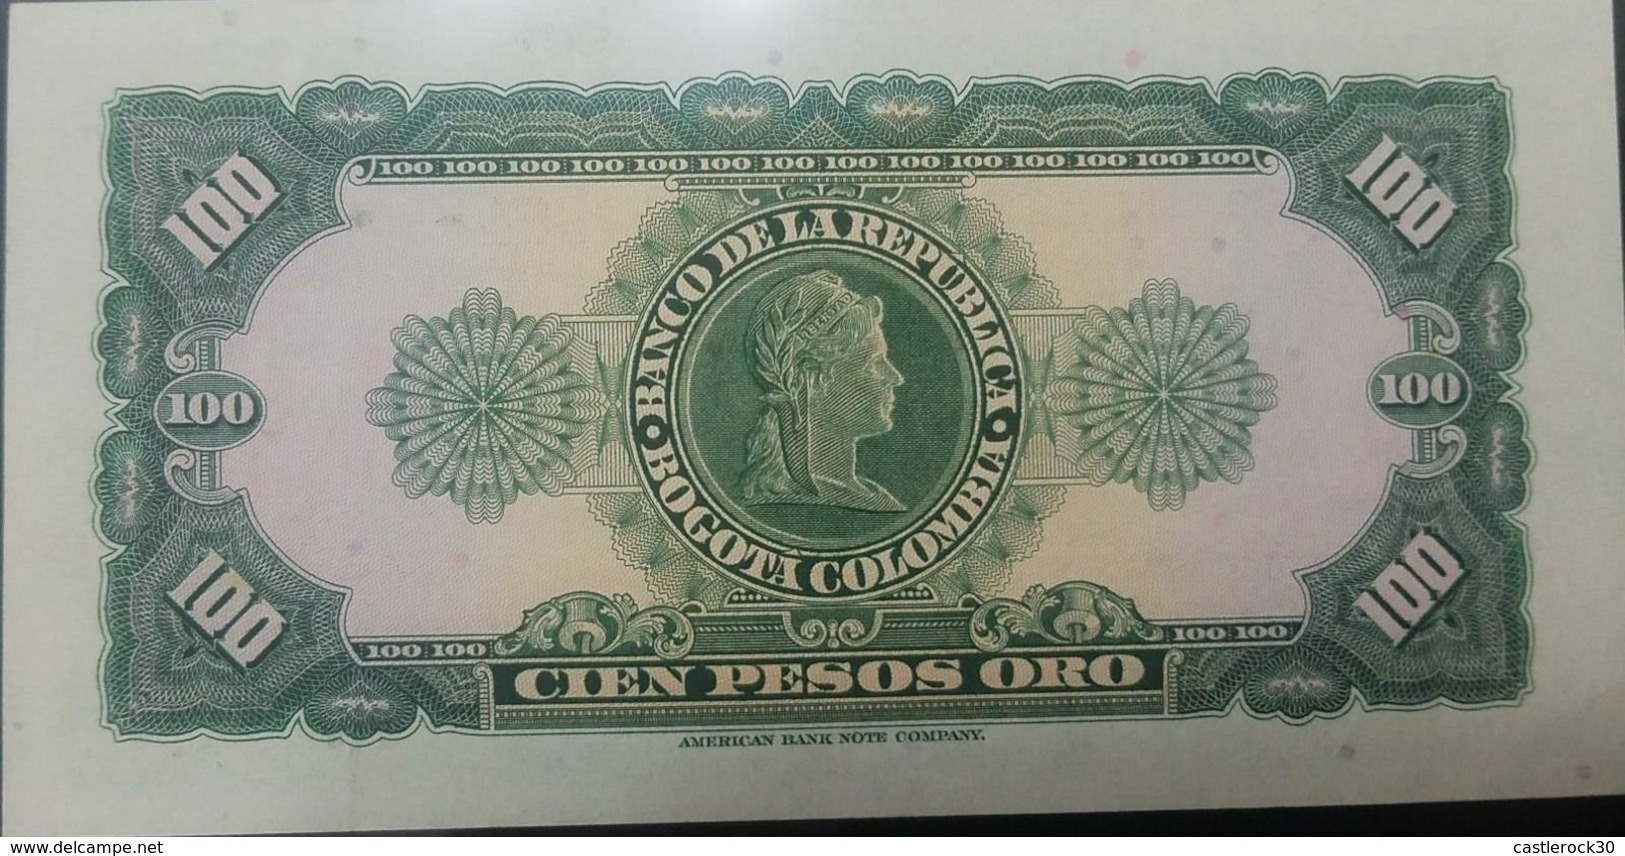 O) 1965 COLOMBIA, BANKNOTE- 100 PESOS ORO- SERIE Y-AMERICAN BANK NOTE COMPANY, SANTANDER, UNC - Colombia